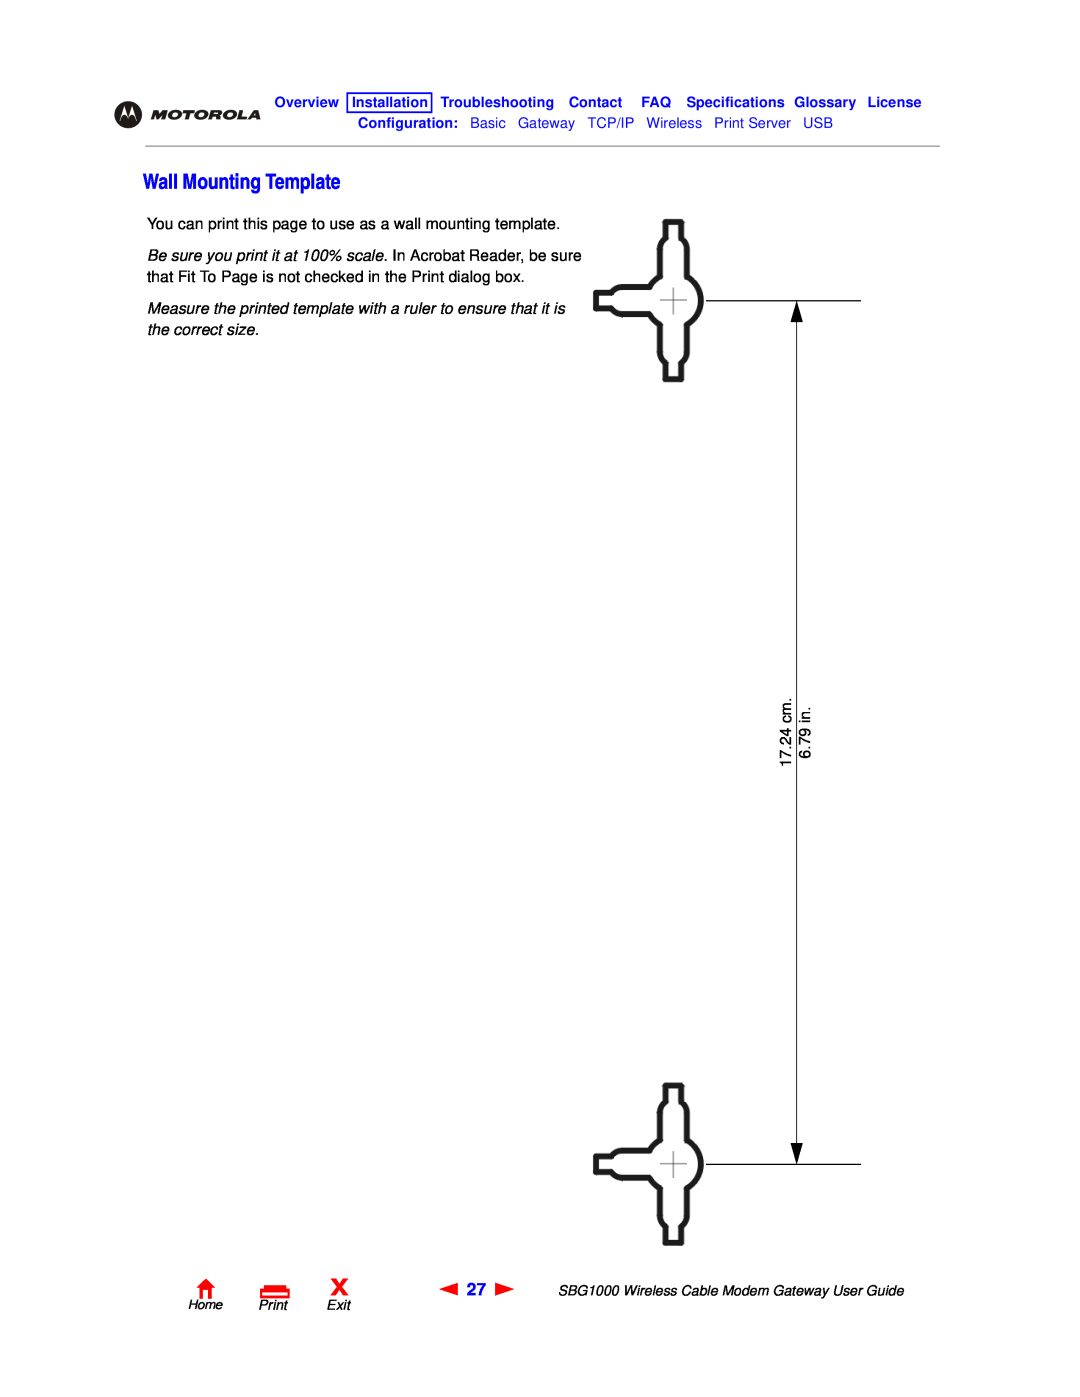 Motorola SBG1000 Wall Mounting Template, You can print this page to use as a wall mounting template, 17.24 cm, 6.79 in 